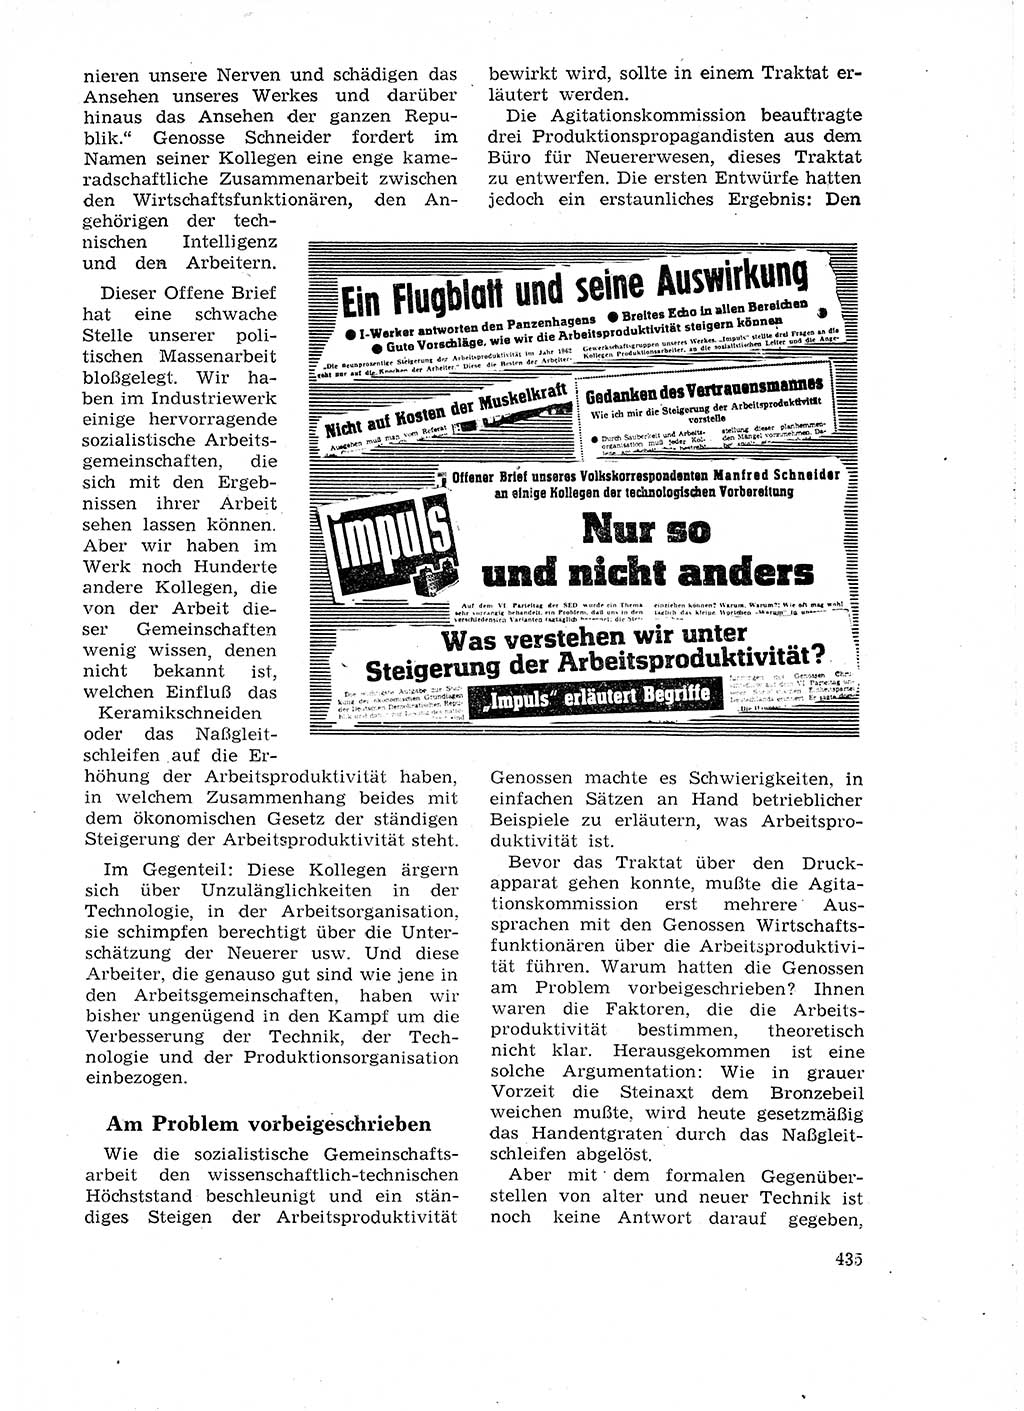 Neuer Weg (NW), Organ des Zentralkomitees (ZK) der SED (Sozialistische Einheitspartei Deutschlands) für Fragen des Parteilebens, 18. Jahrgang [Deutsche Demokratische Republik (DDR)] 1963, Seite 435 (NW ZK SED DDR 1963, S. 435)